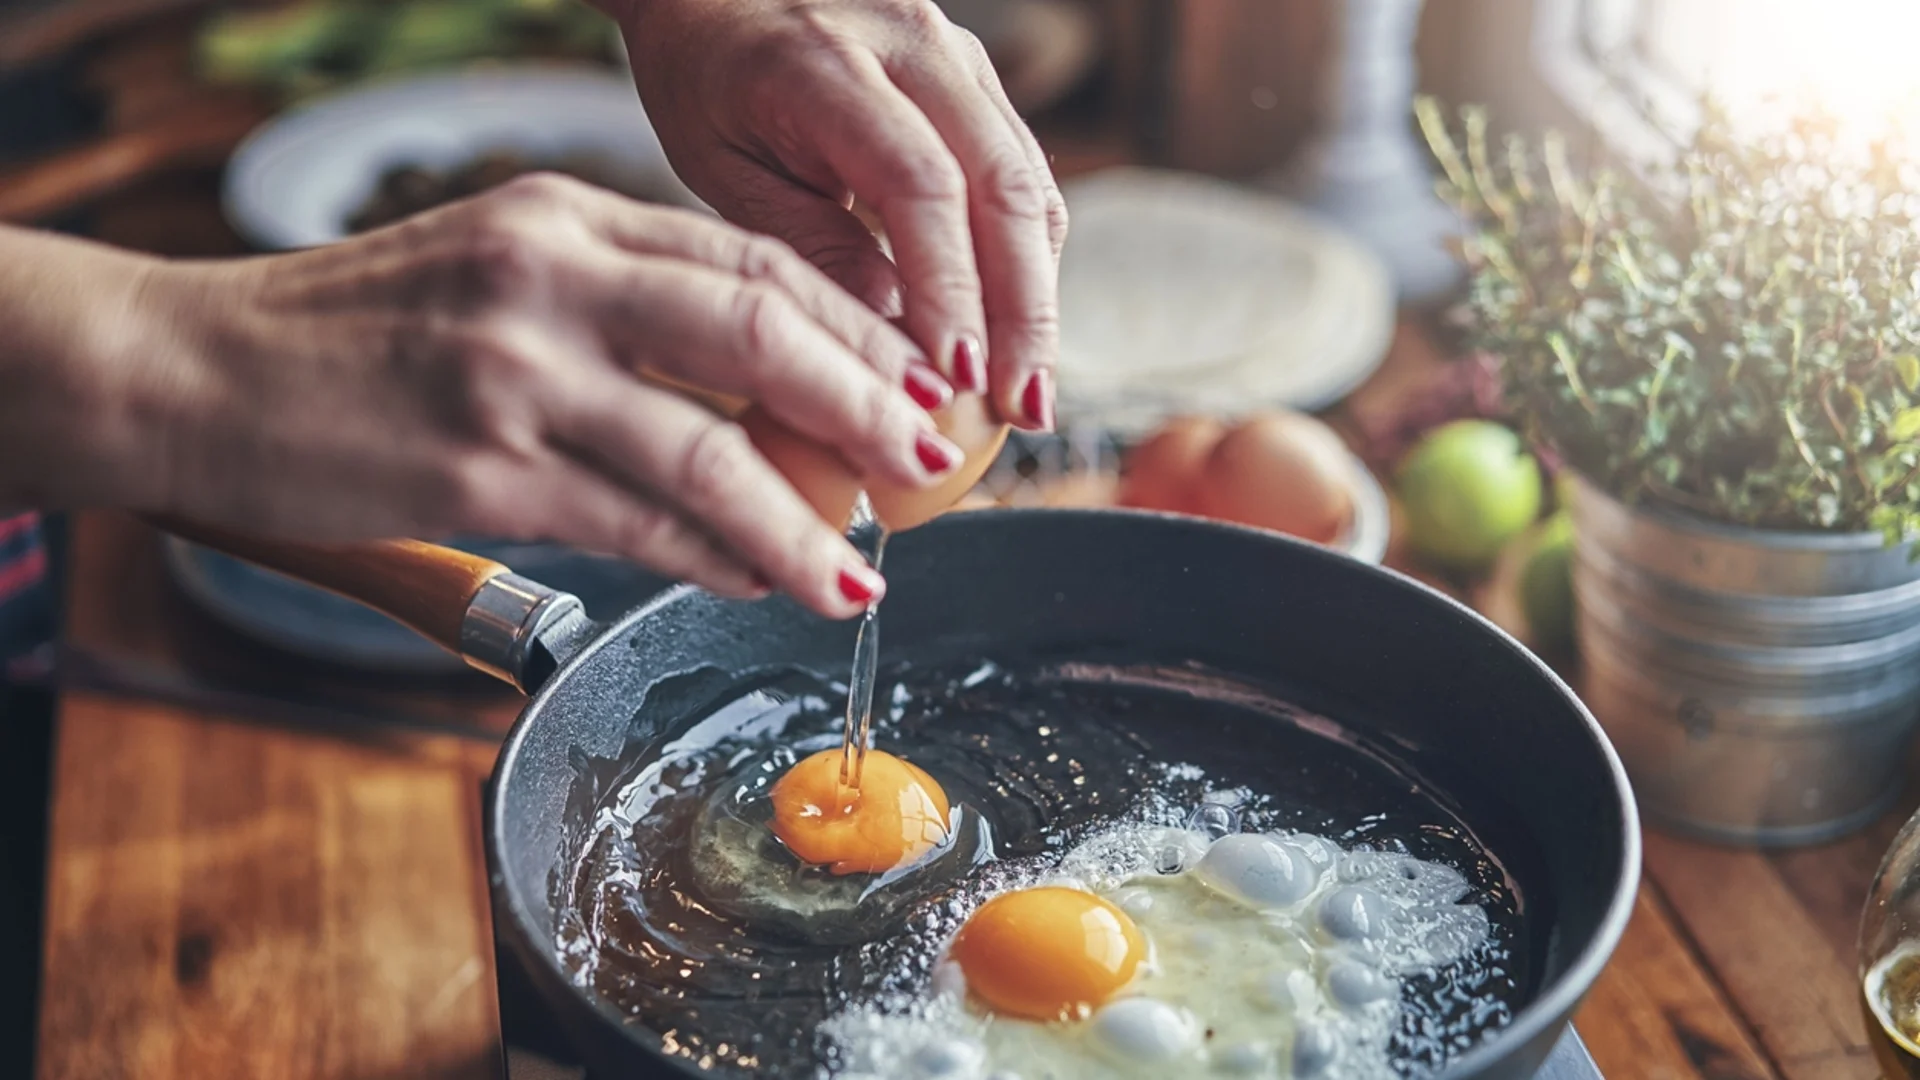 Яйца - как е правилно да се съхраняват и готвят, за да се запази витамин Д в тях